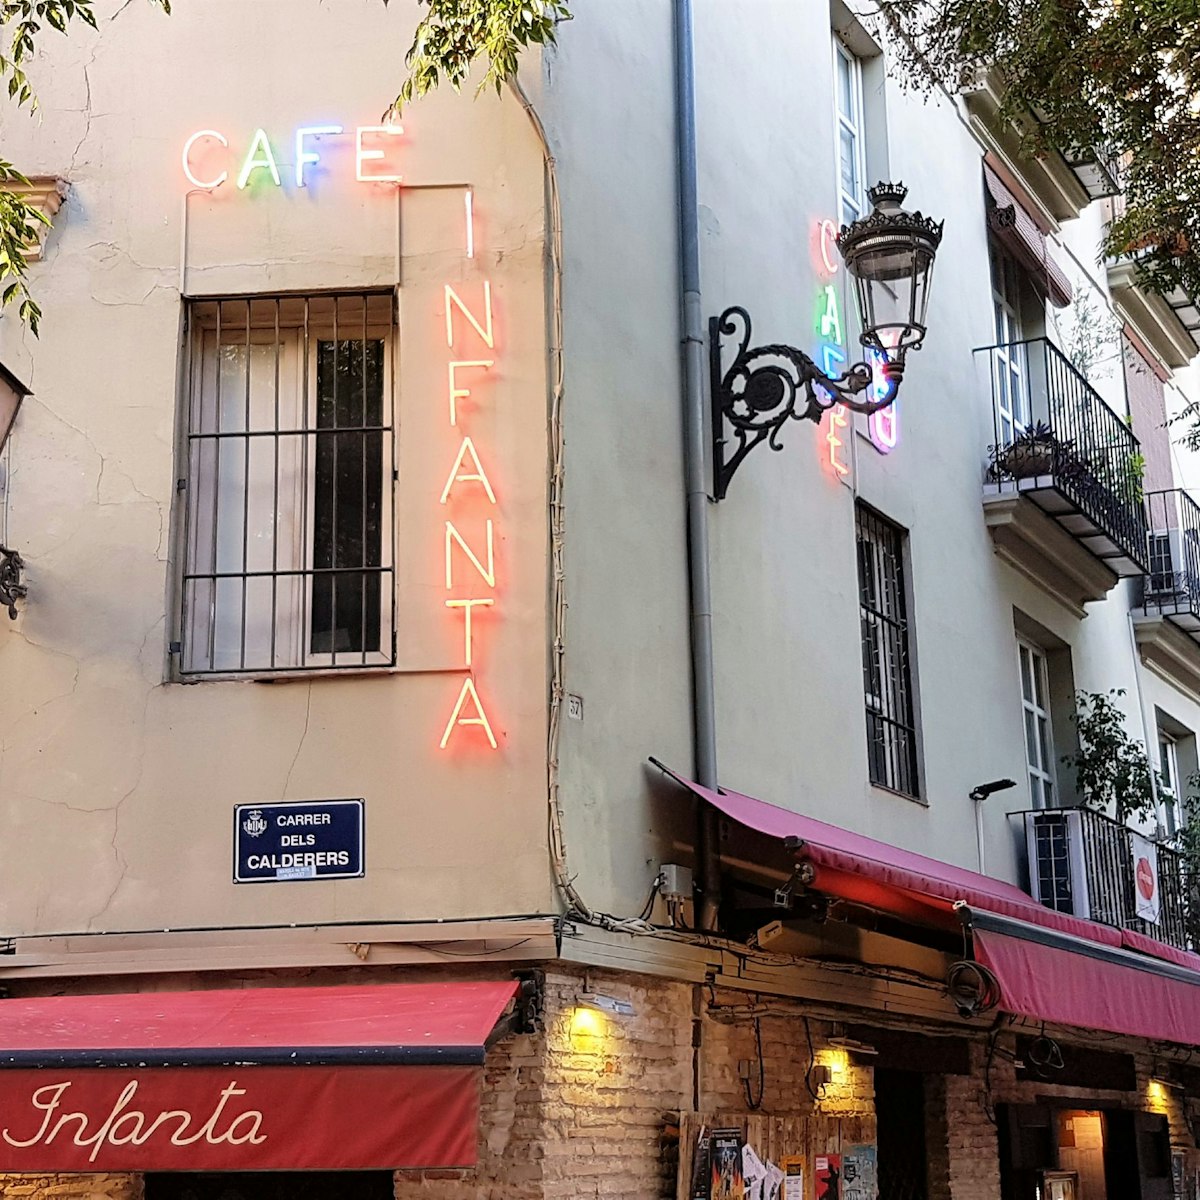 Street view of Café Infanta.